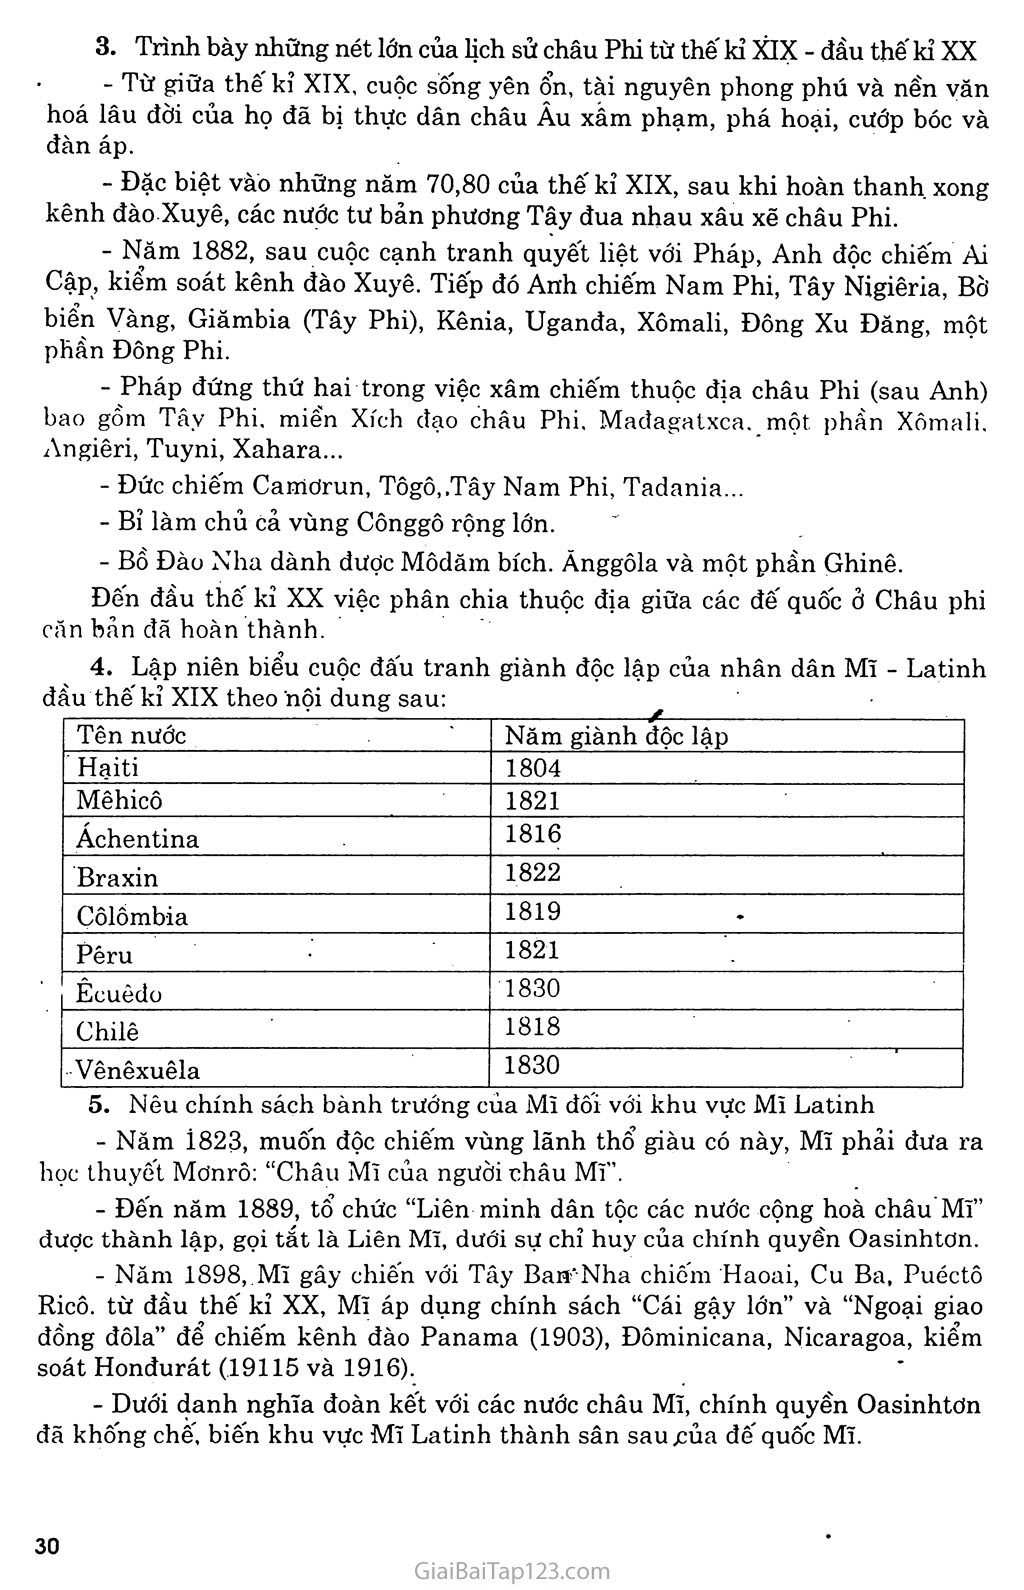 Bài 5: Châu phi và khu vực Mĩ Latinh (Từ thế kỷ XIX - đầu thế kỳ XX) trang 5